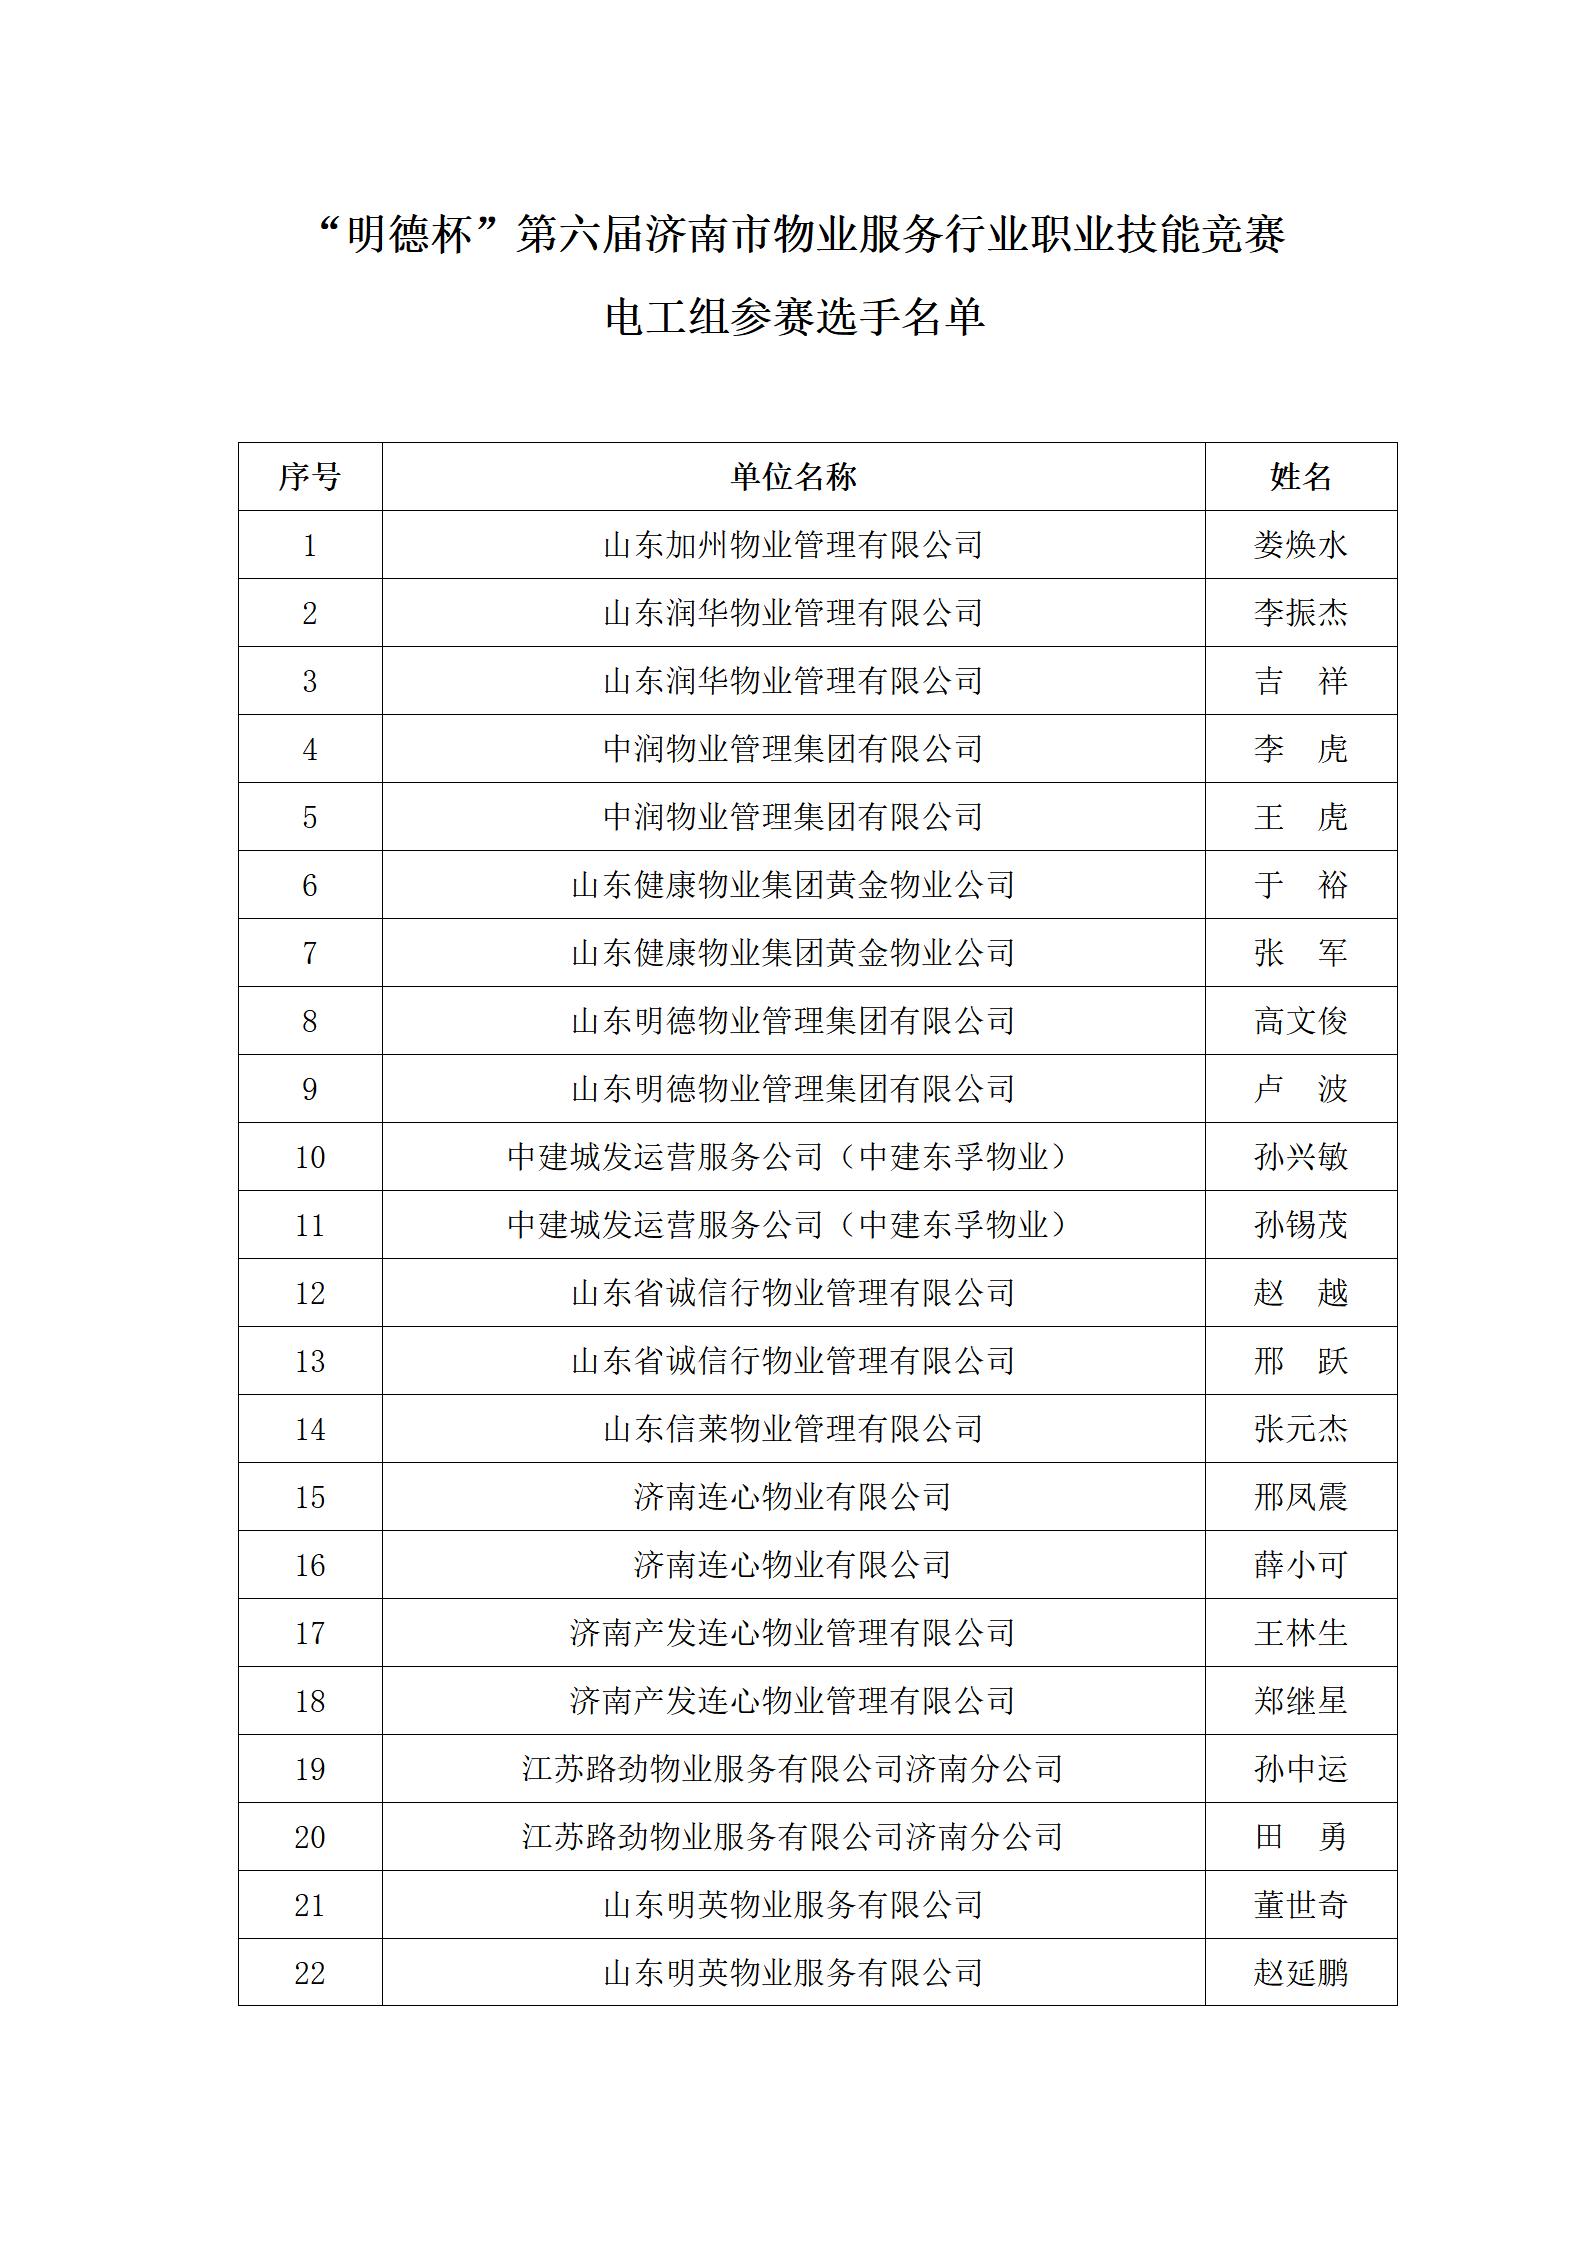 关于“明德杯”第六届济南市物业服务行业职业技能竞赛选手名单的公示_05